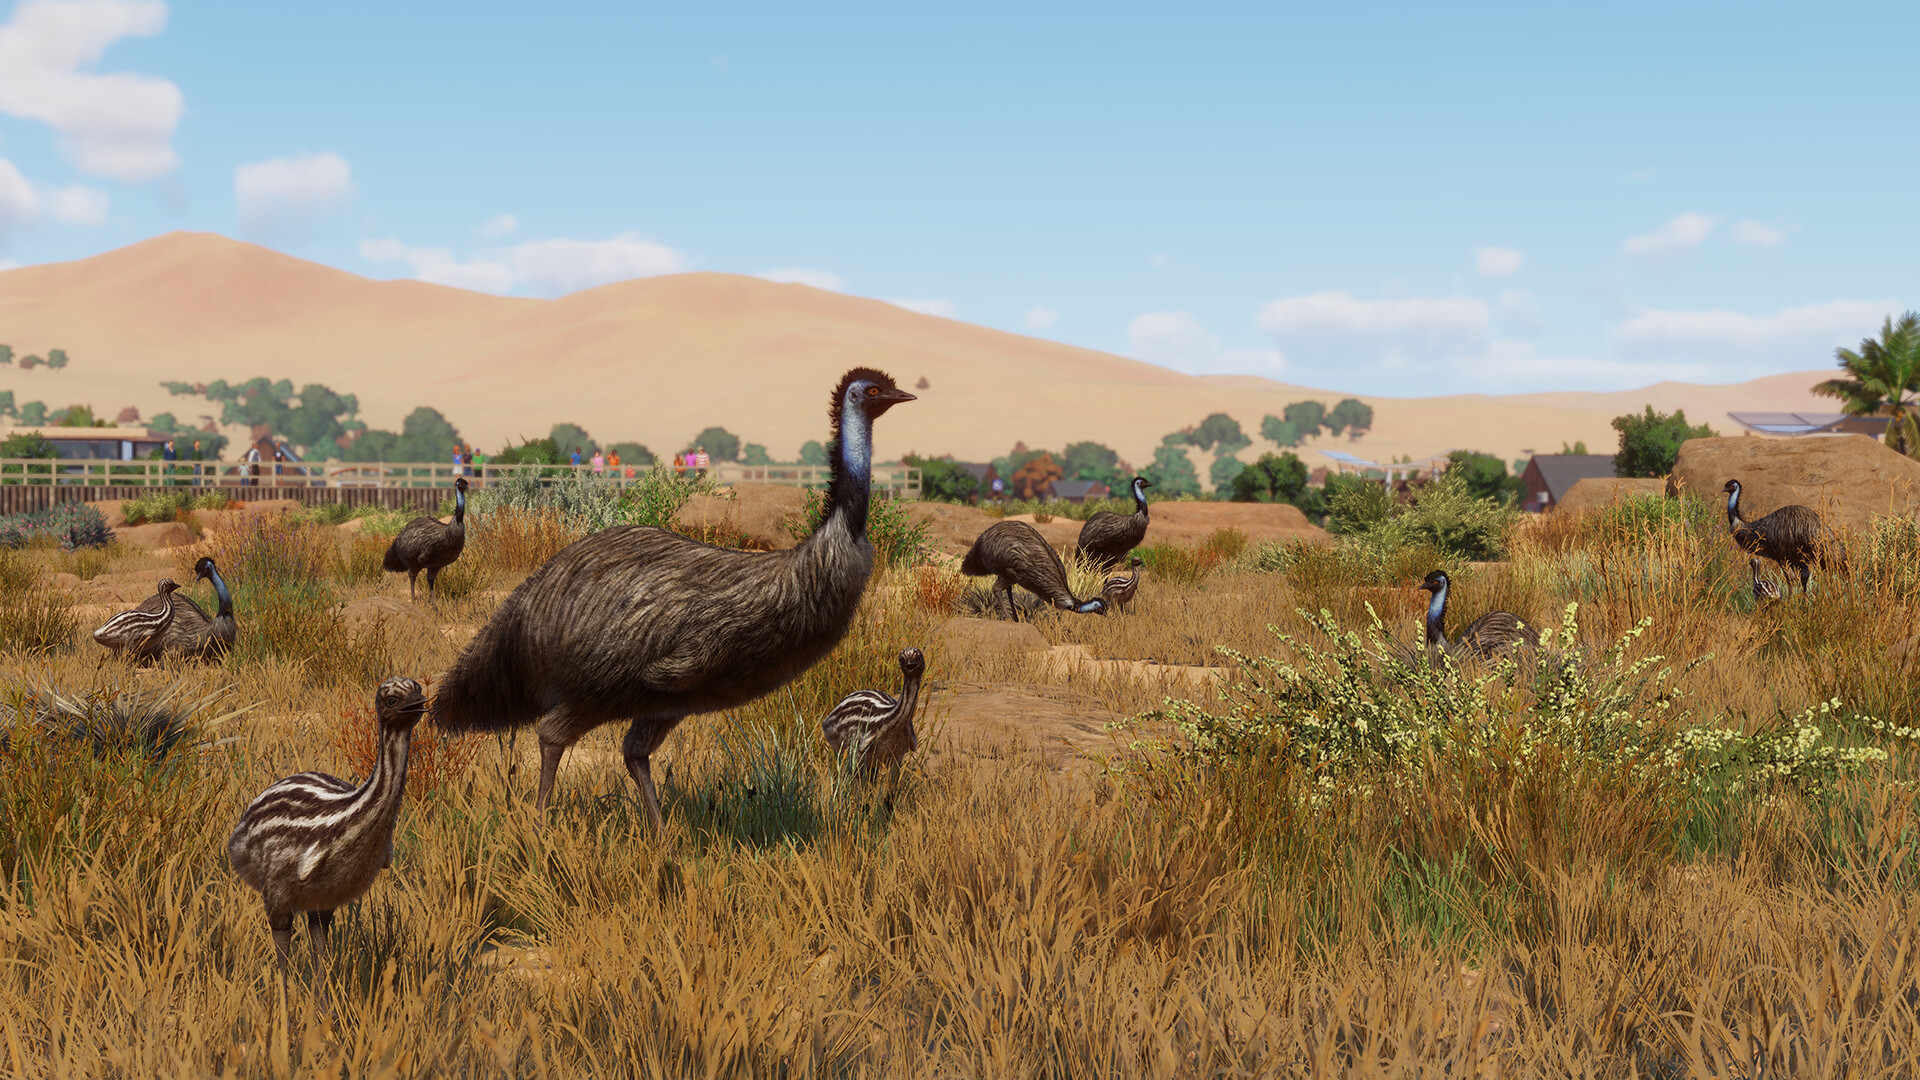 Planet Zoo - Grasslands Animal Pack DLC EU Steam CD Key